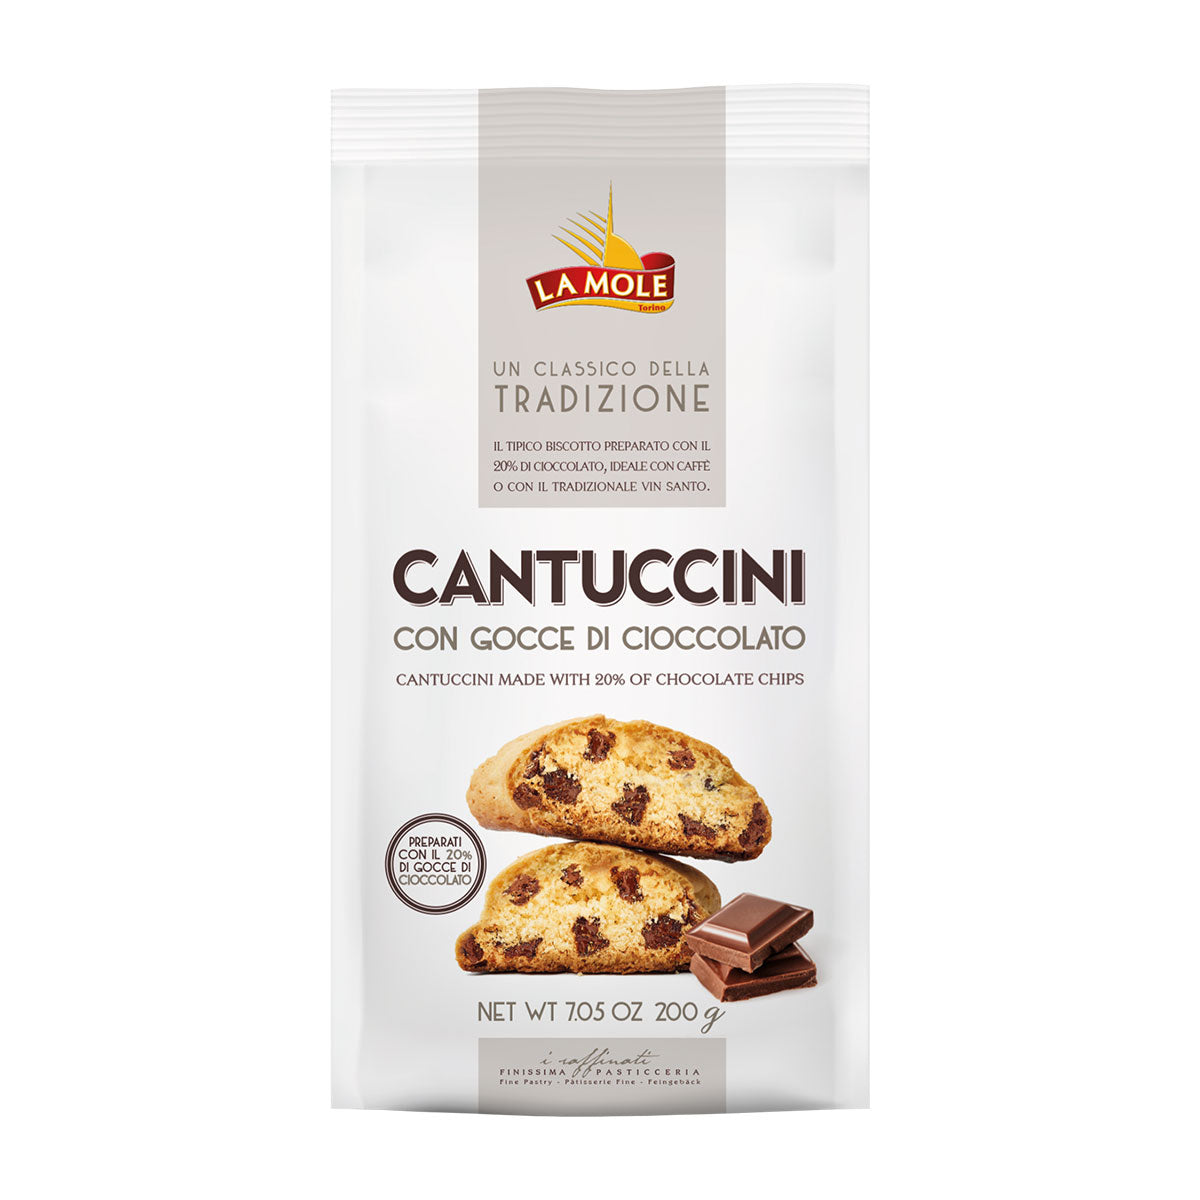 La Mole Cantuccini - Chocolate Chip 200g